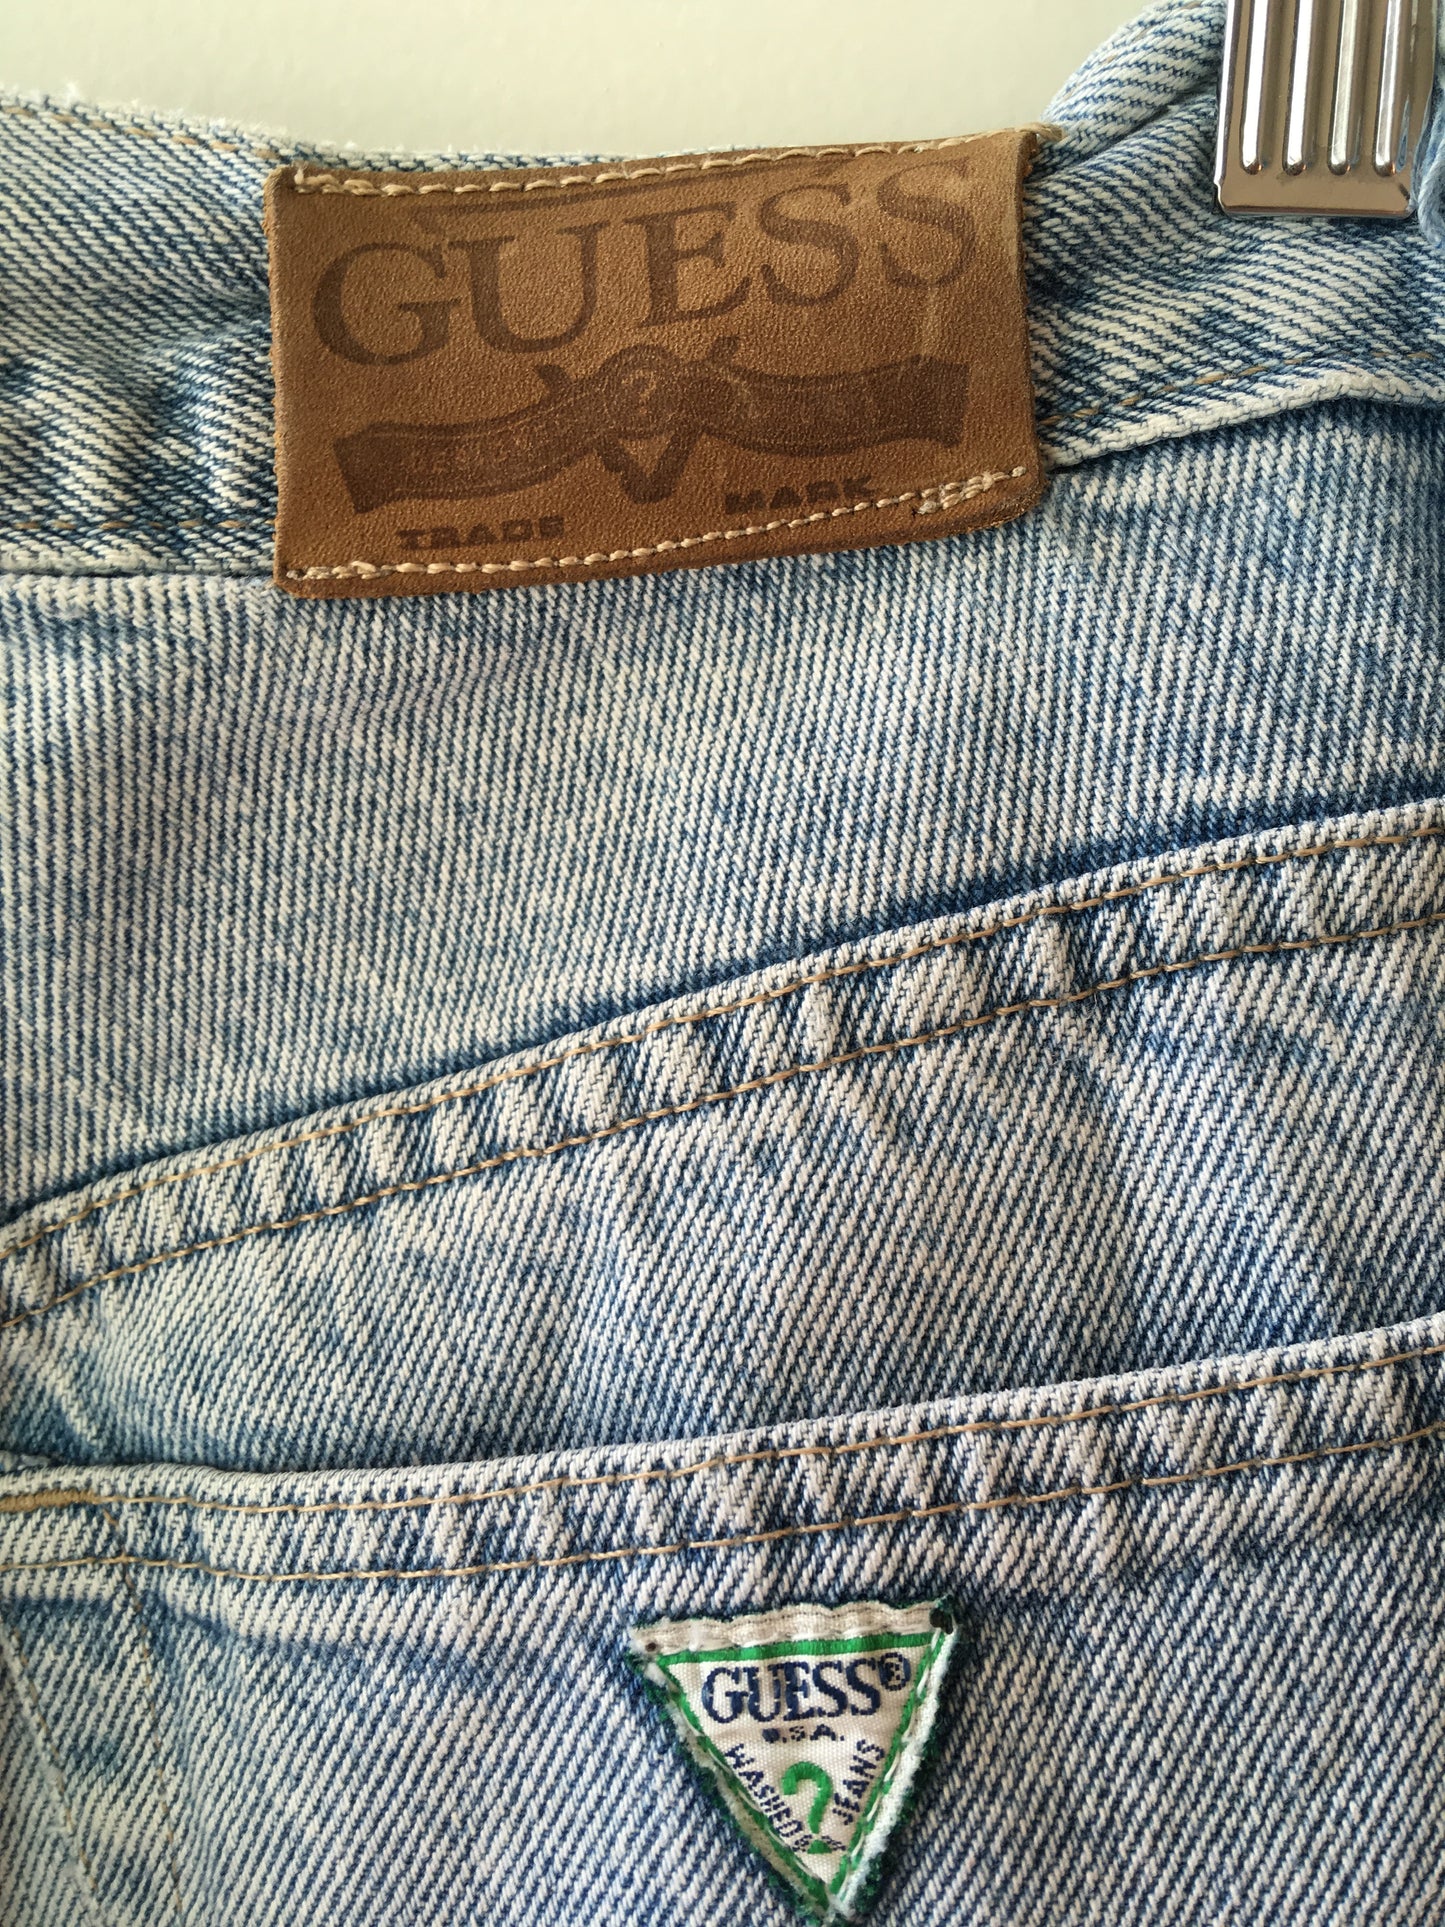 Vintage Guess Jeans